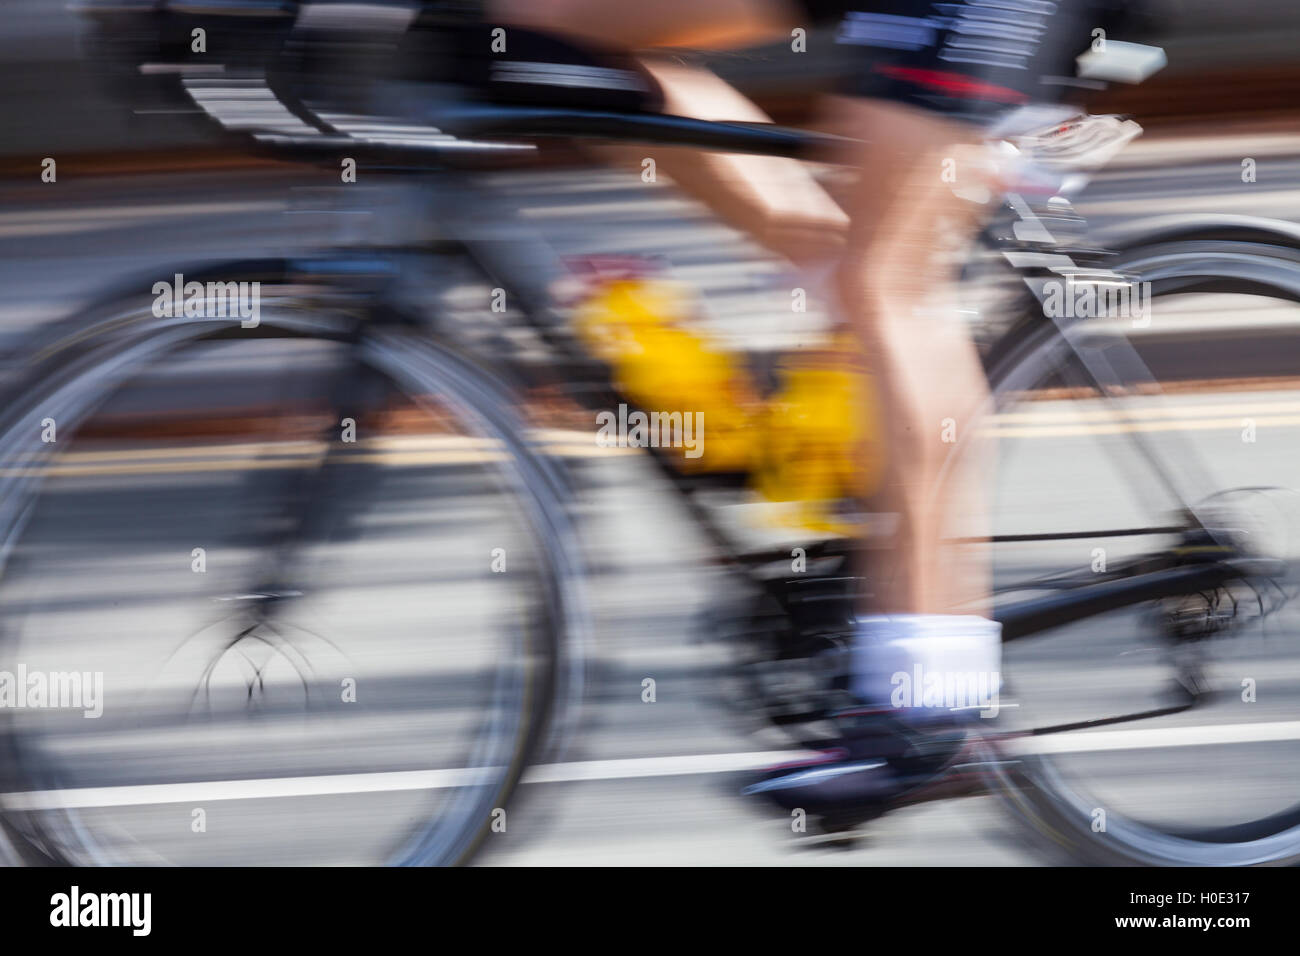 Tenby 2016 Ironman les cyclistes aux suivis et carew vitesse montrant floue Banque D'Images